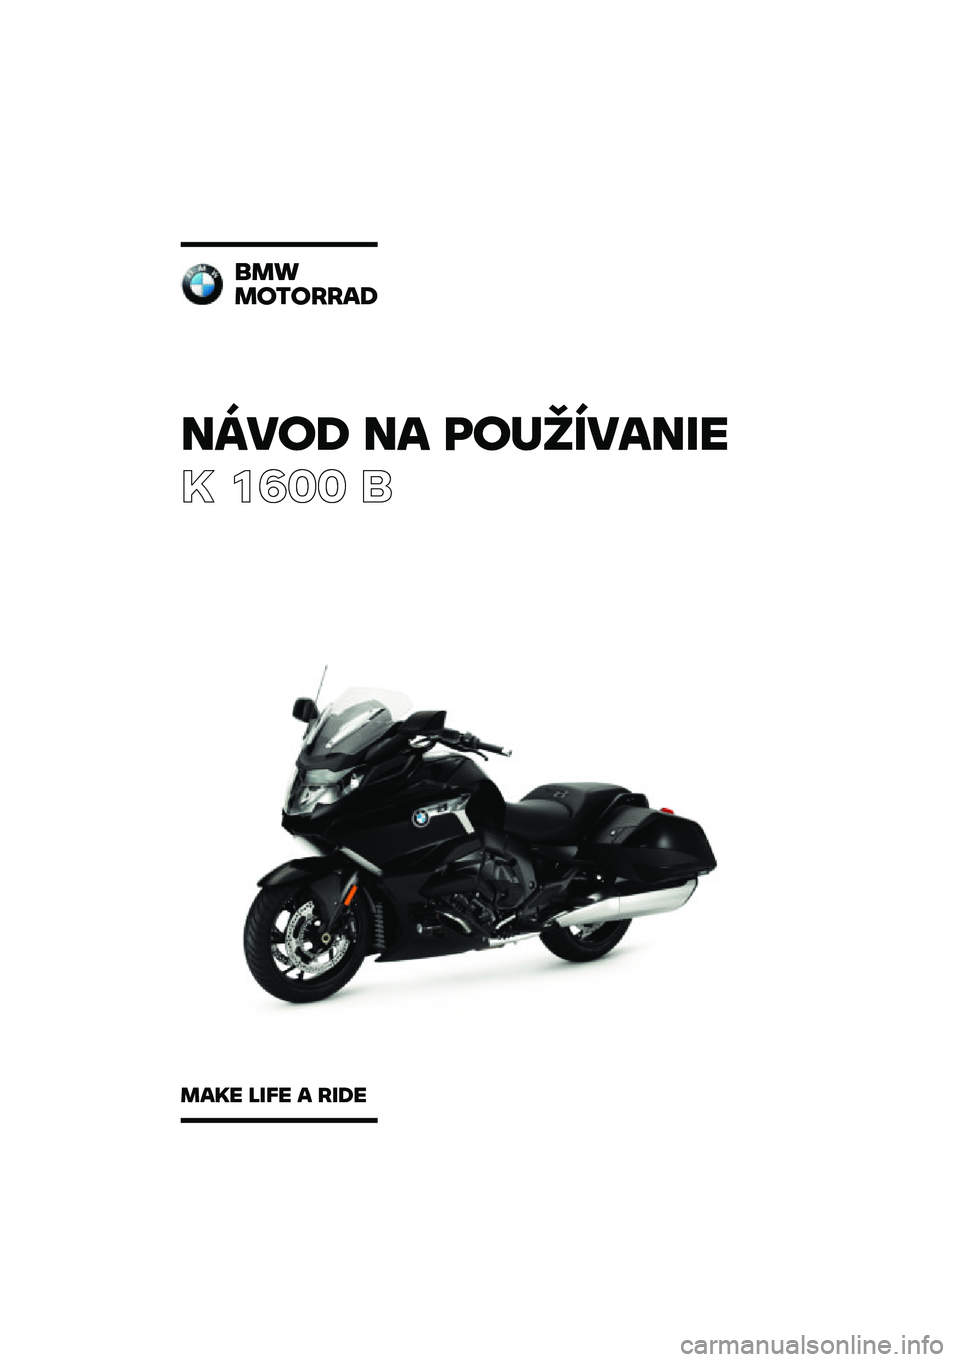 BMW MOTORRAD K 1600 B 2020  Návod na používanie (in Slovak) �����\b �� �	��
�������
� ���� �	
���
��������\b
���� ���� � ���\b� 